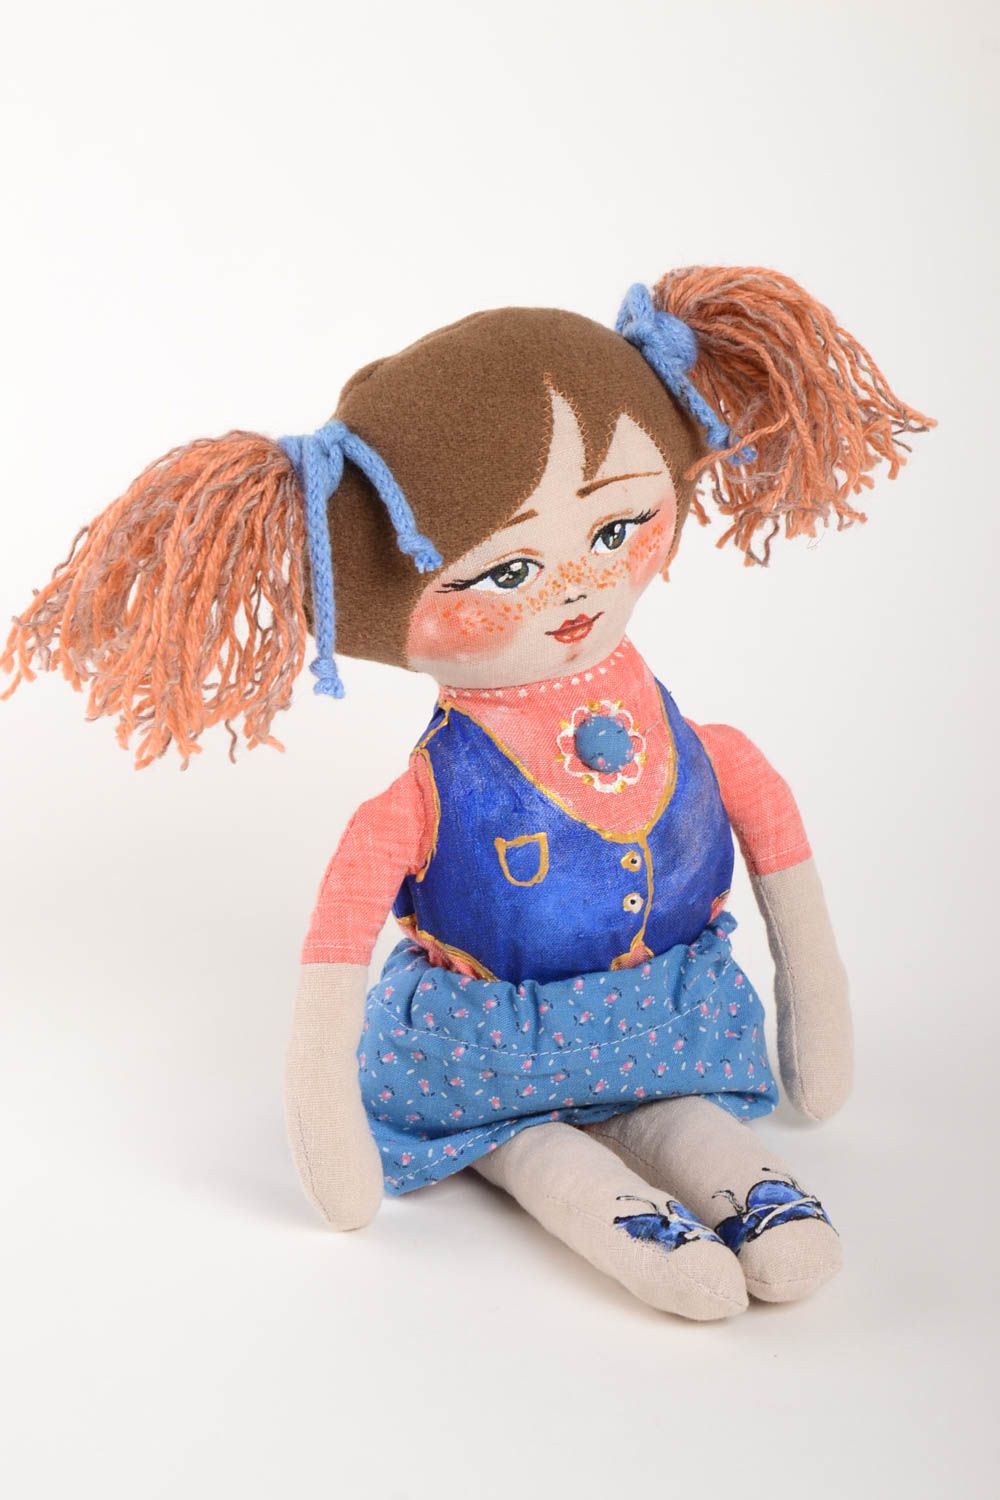 Handmade soft doll girl doll designer toys for children gifts for kids photo 2